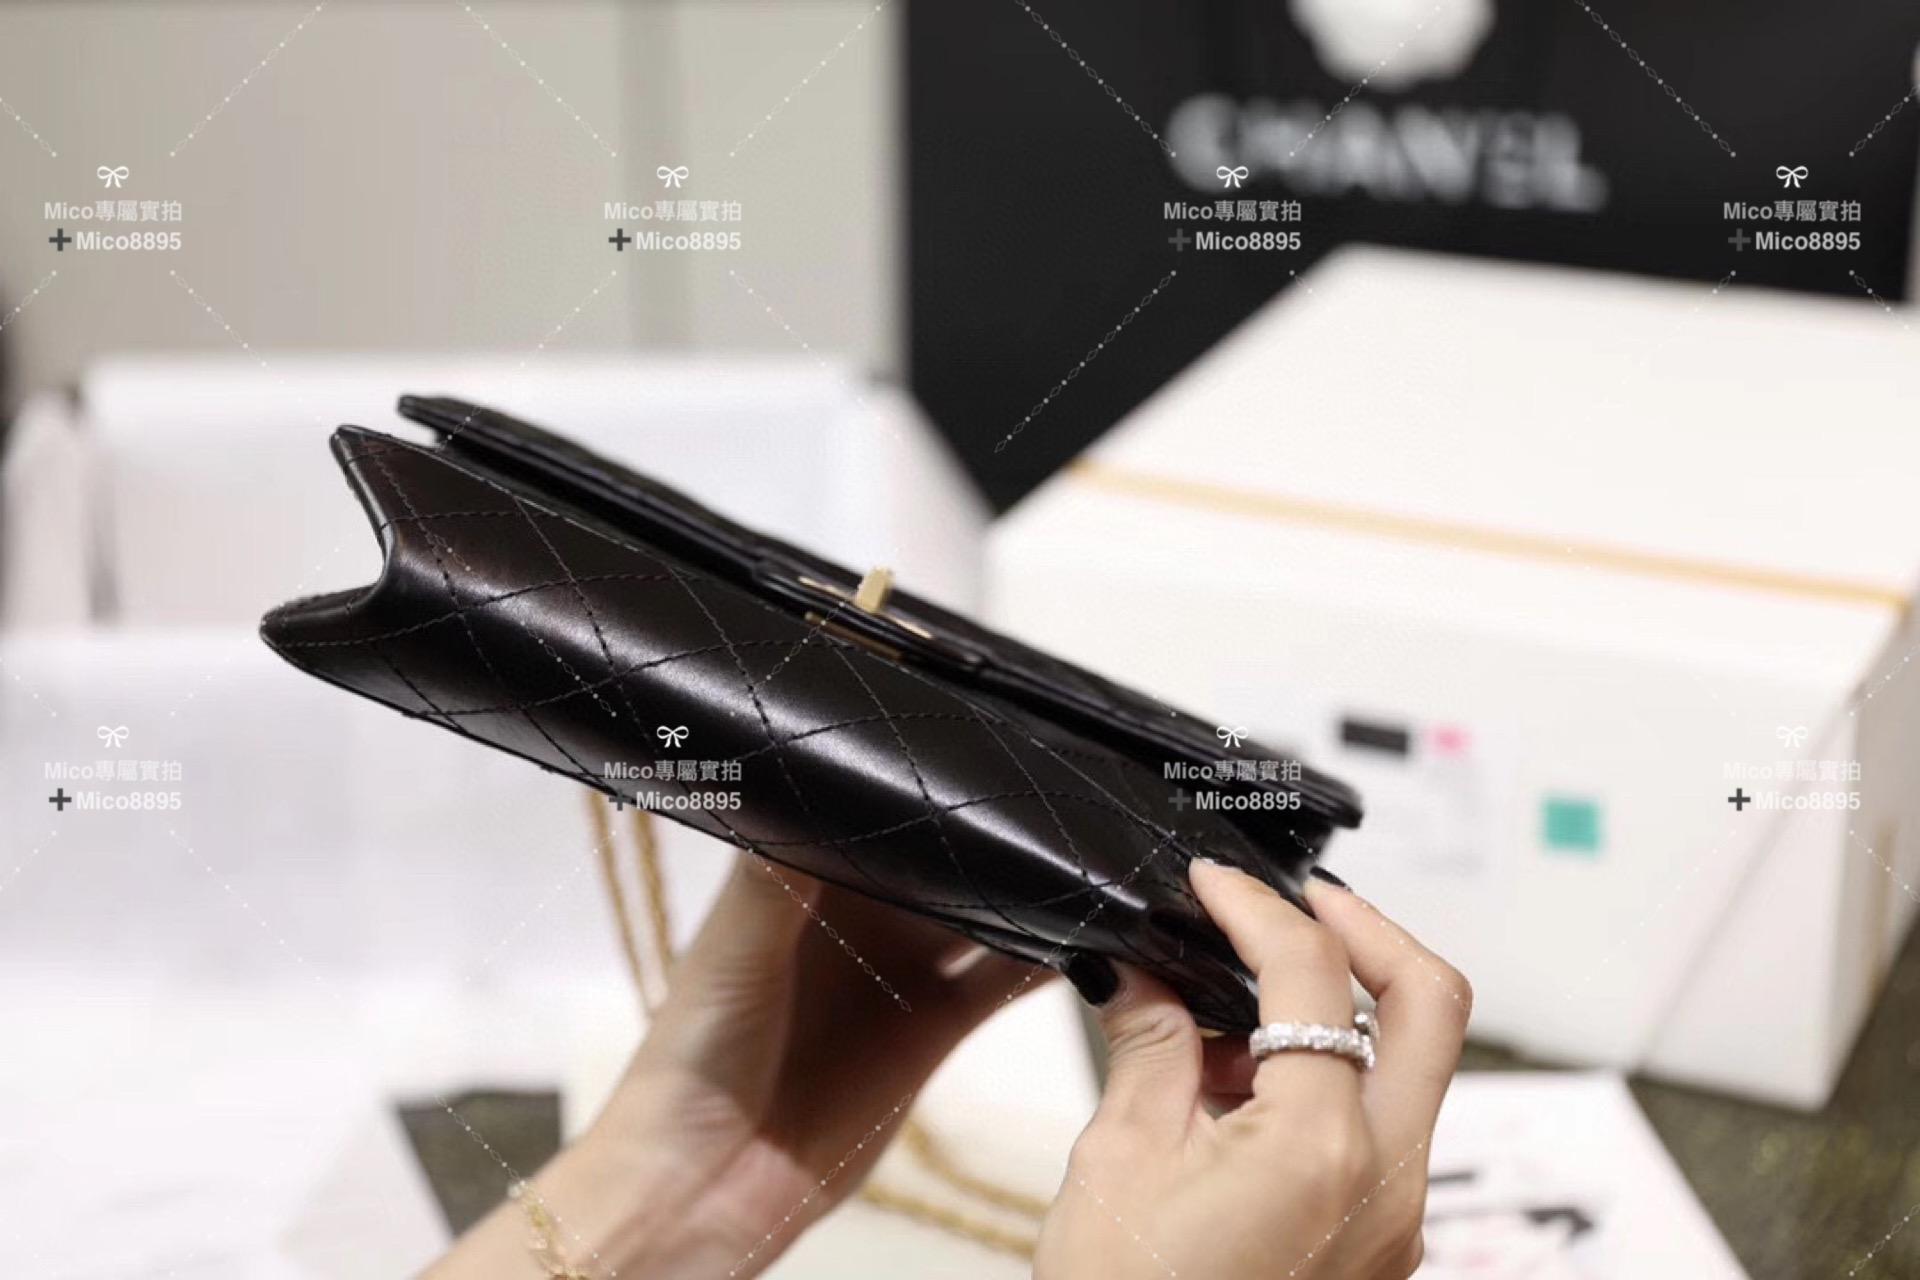 Chanel 2.55 復刻 🜲 中號 經典系列 黑色復古金 24cm